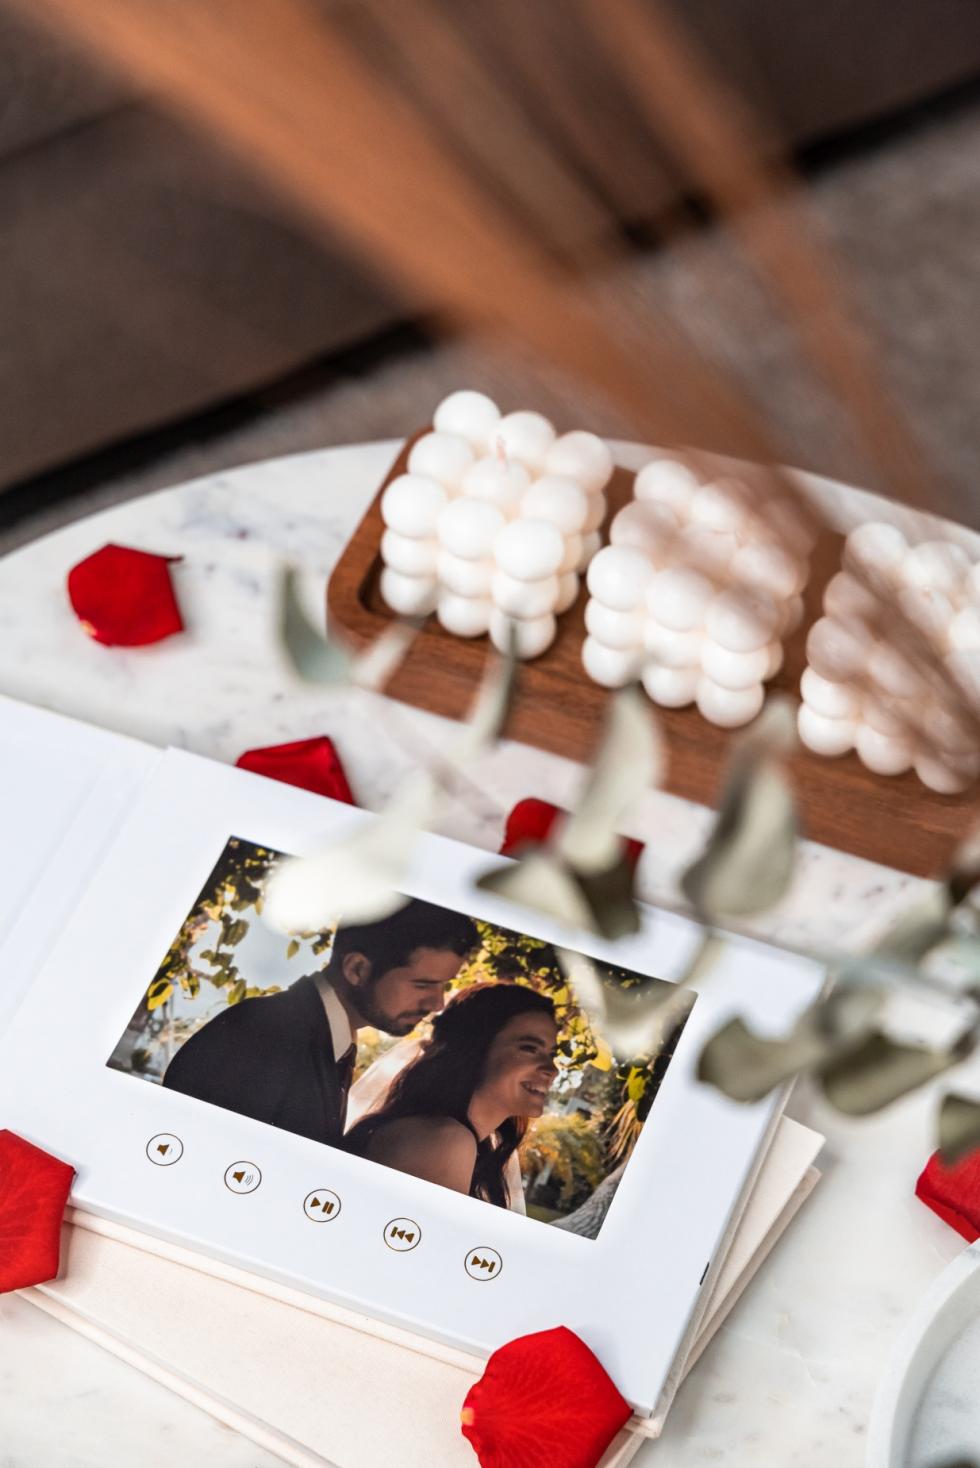 Weddingbooks - die moderne Art Fotos aufzubewahren